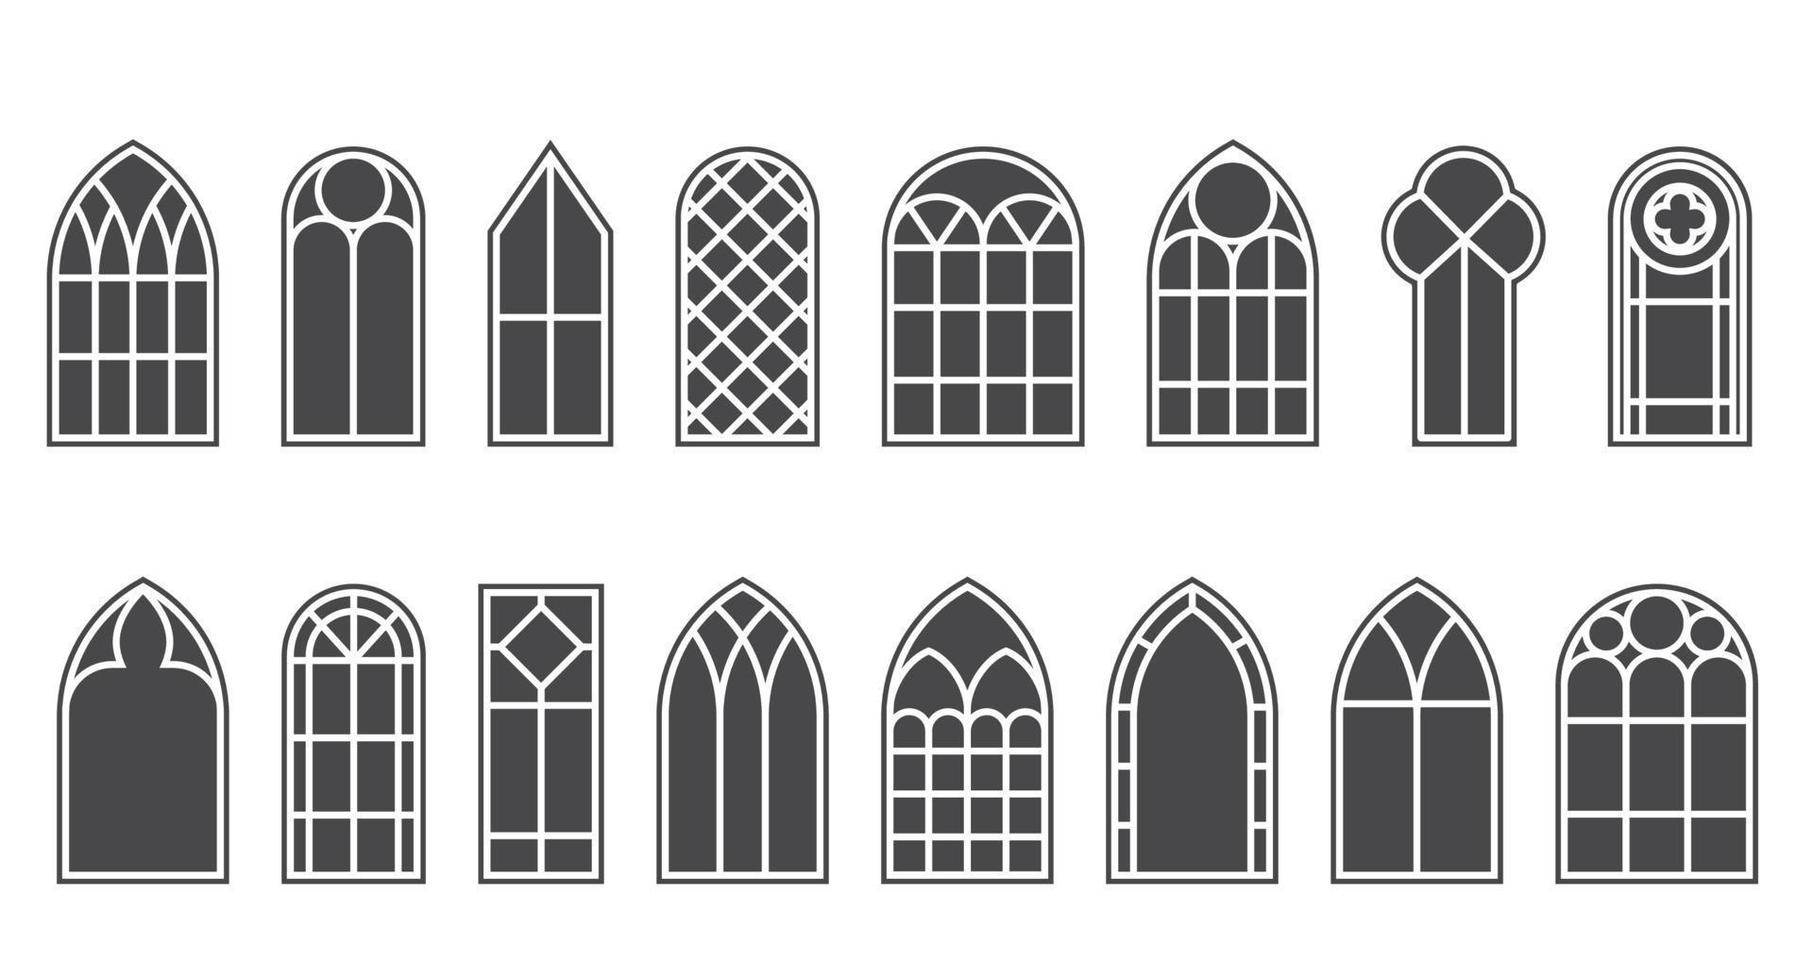 mittelalterliche fenster der kirche gesetzt. alte gotische architekturelemente. Vektor-Glyphen-Illustration auf weißem Hintergrund. vektor